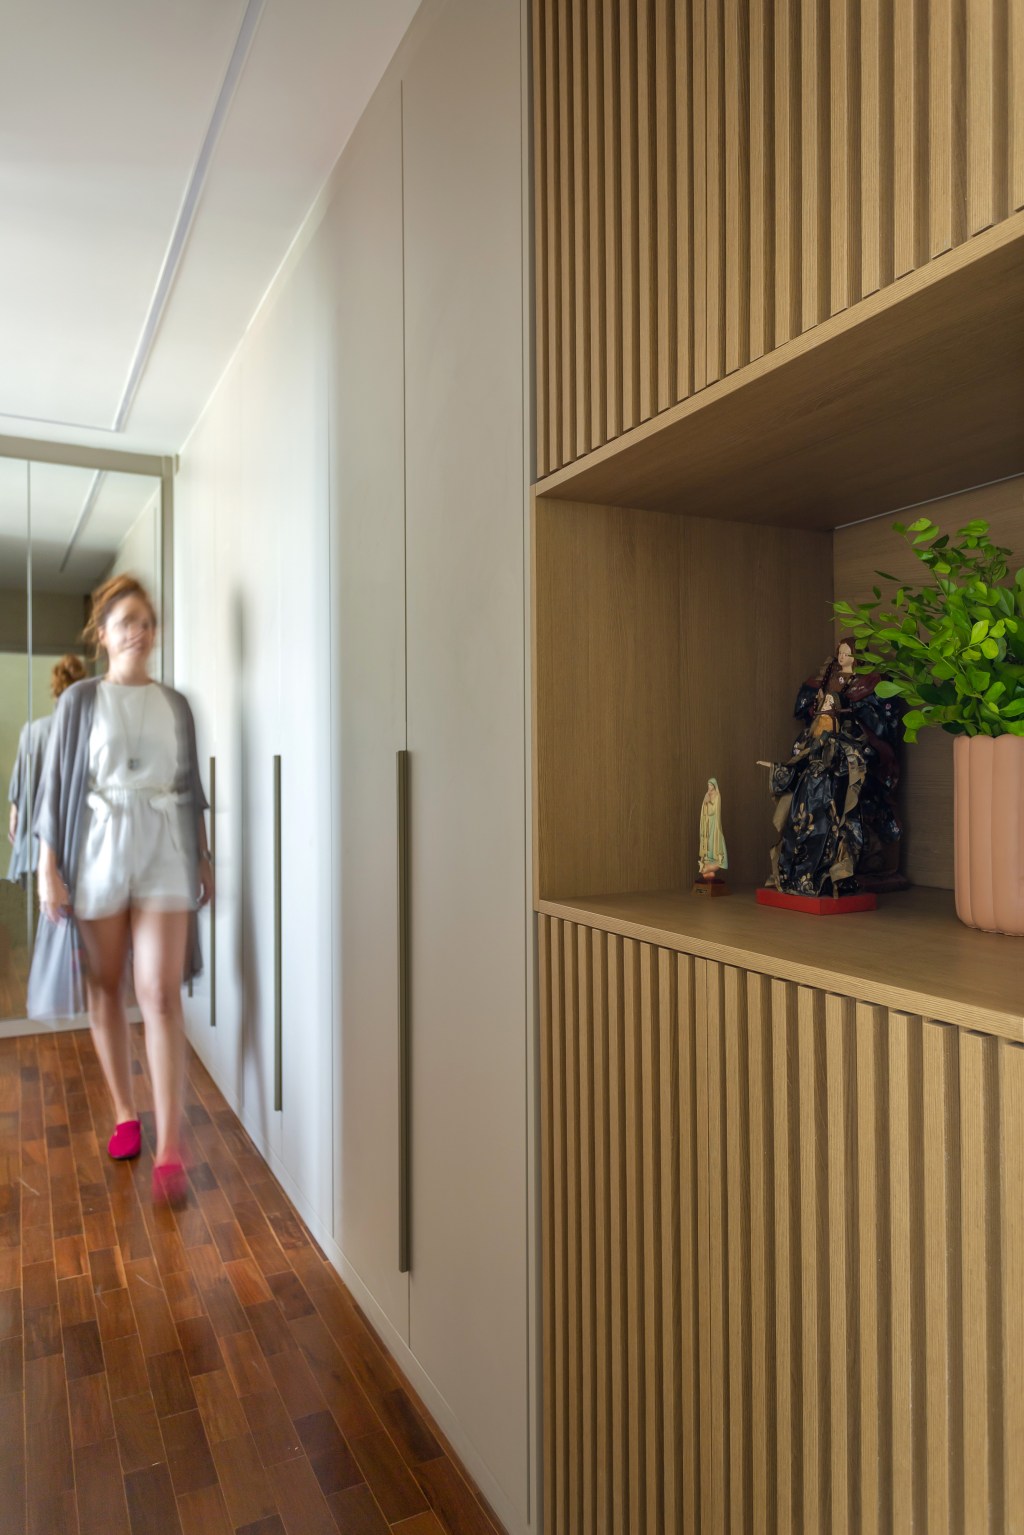 Apê 110 m2 cozinha retrô home office escondido Kelly Figueiredo decoracao apartamento corredor madeira ripado